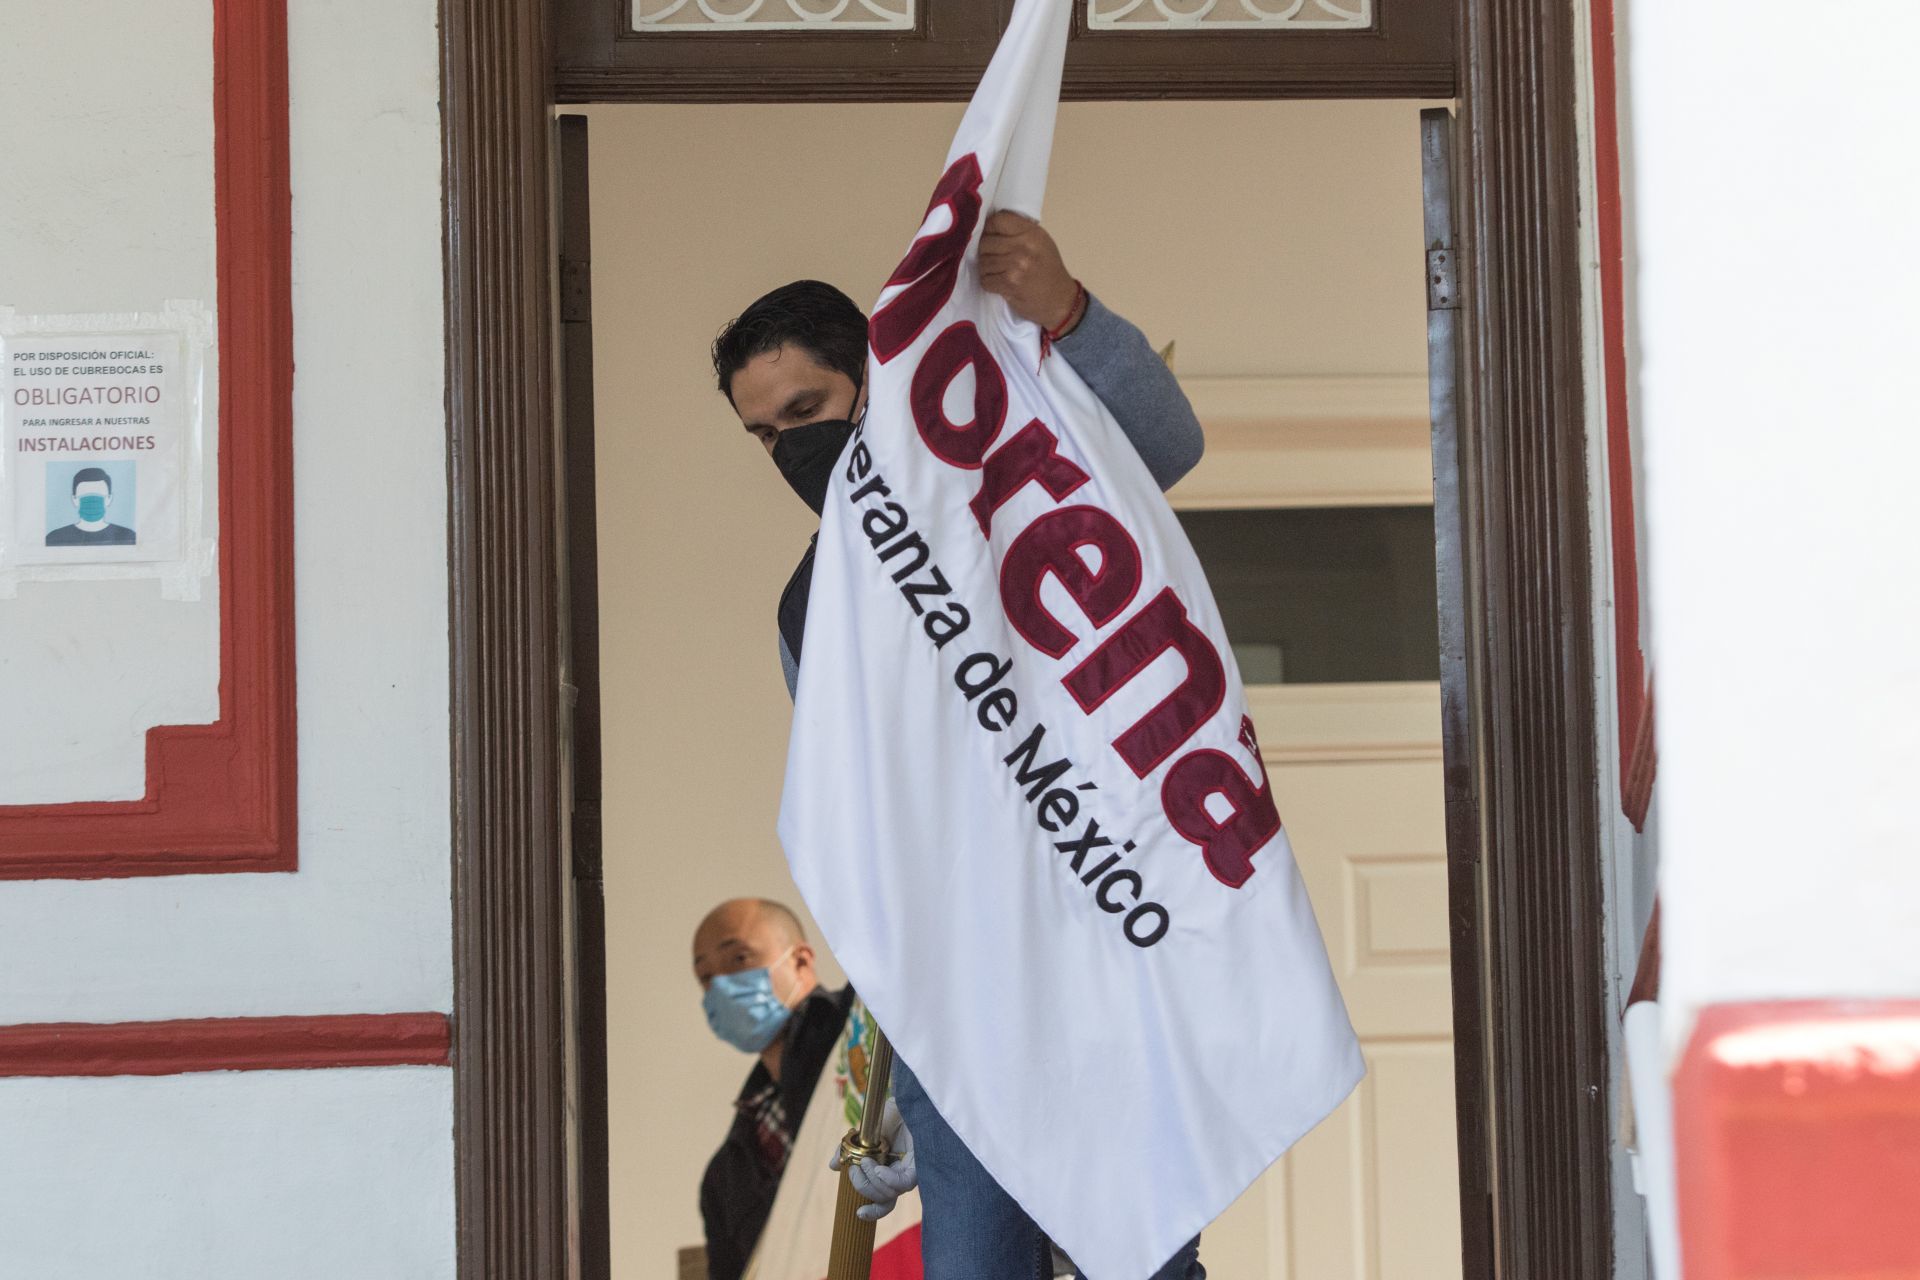 Declaran improcedente coalición entre Morena, PT y Nueva Alianza en Guanajuato